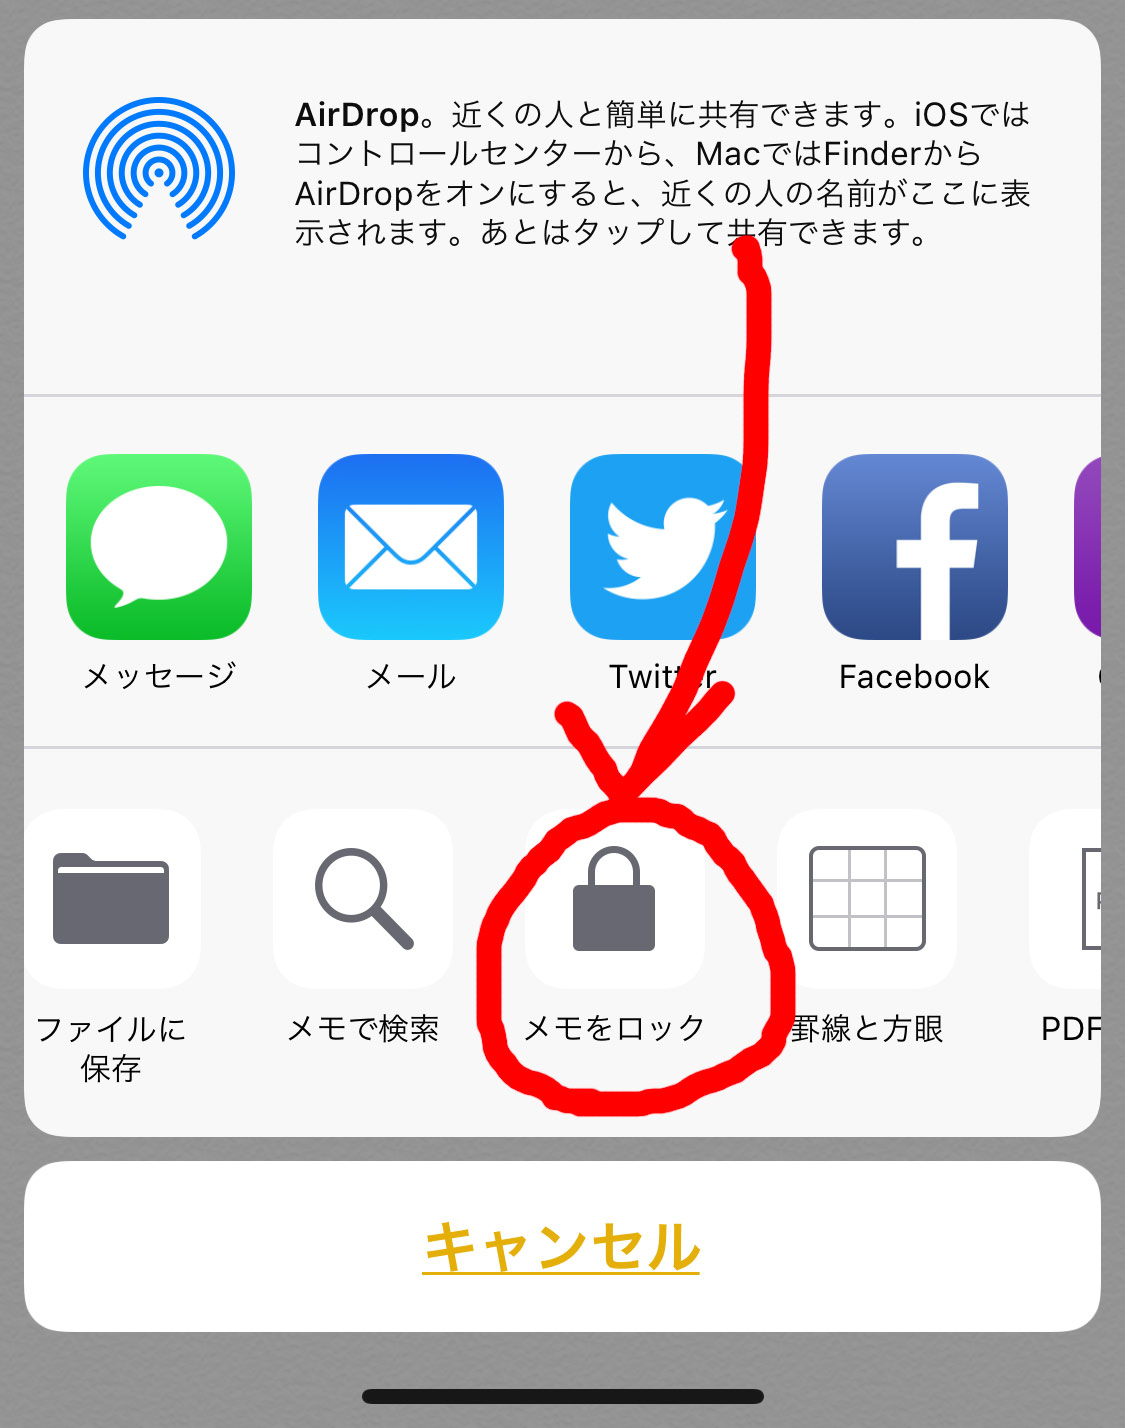 パスワード管理アプリ 無料で最強のおすすめ Iphone編